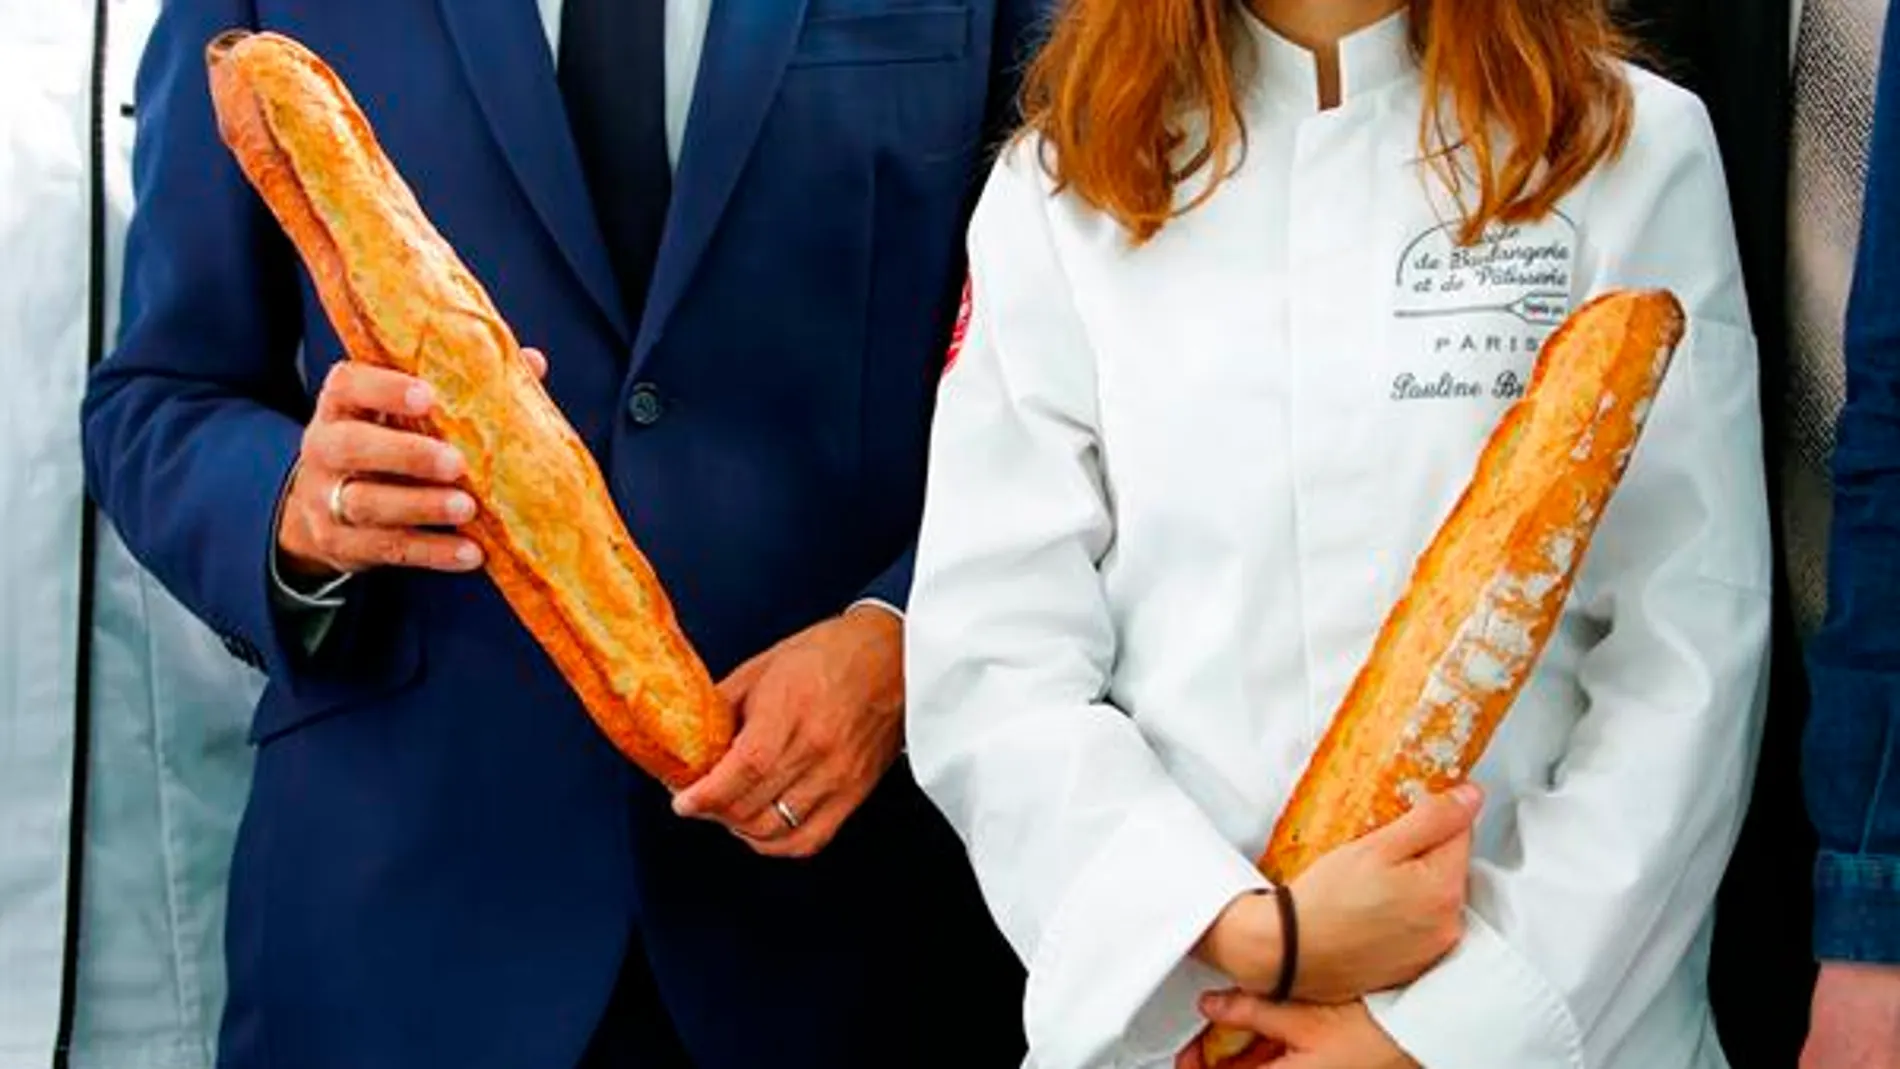 La mejor baguette de Francia no gusta en El Elíseo por los comentarios de su panadero